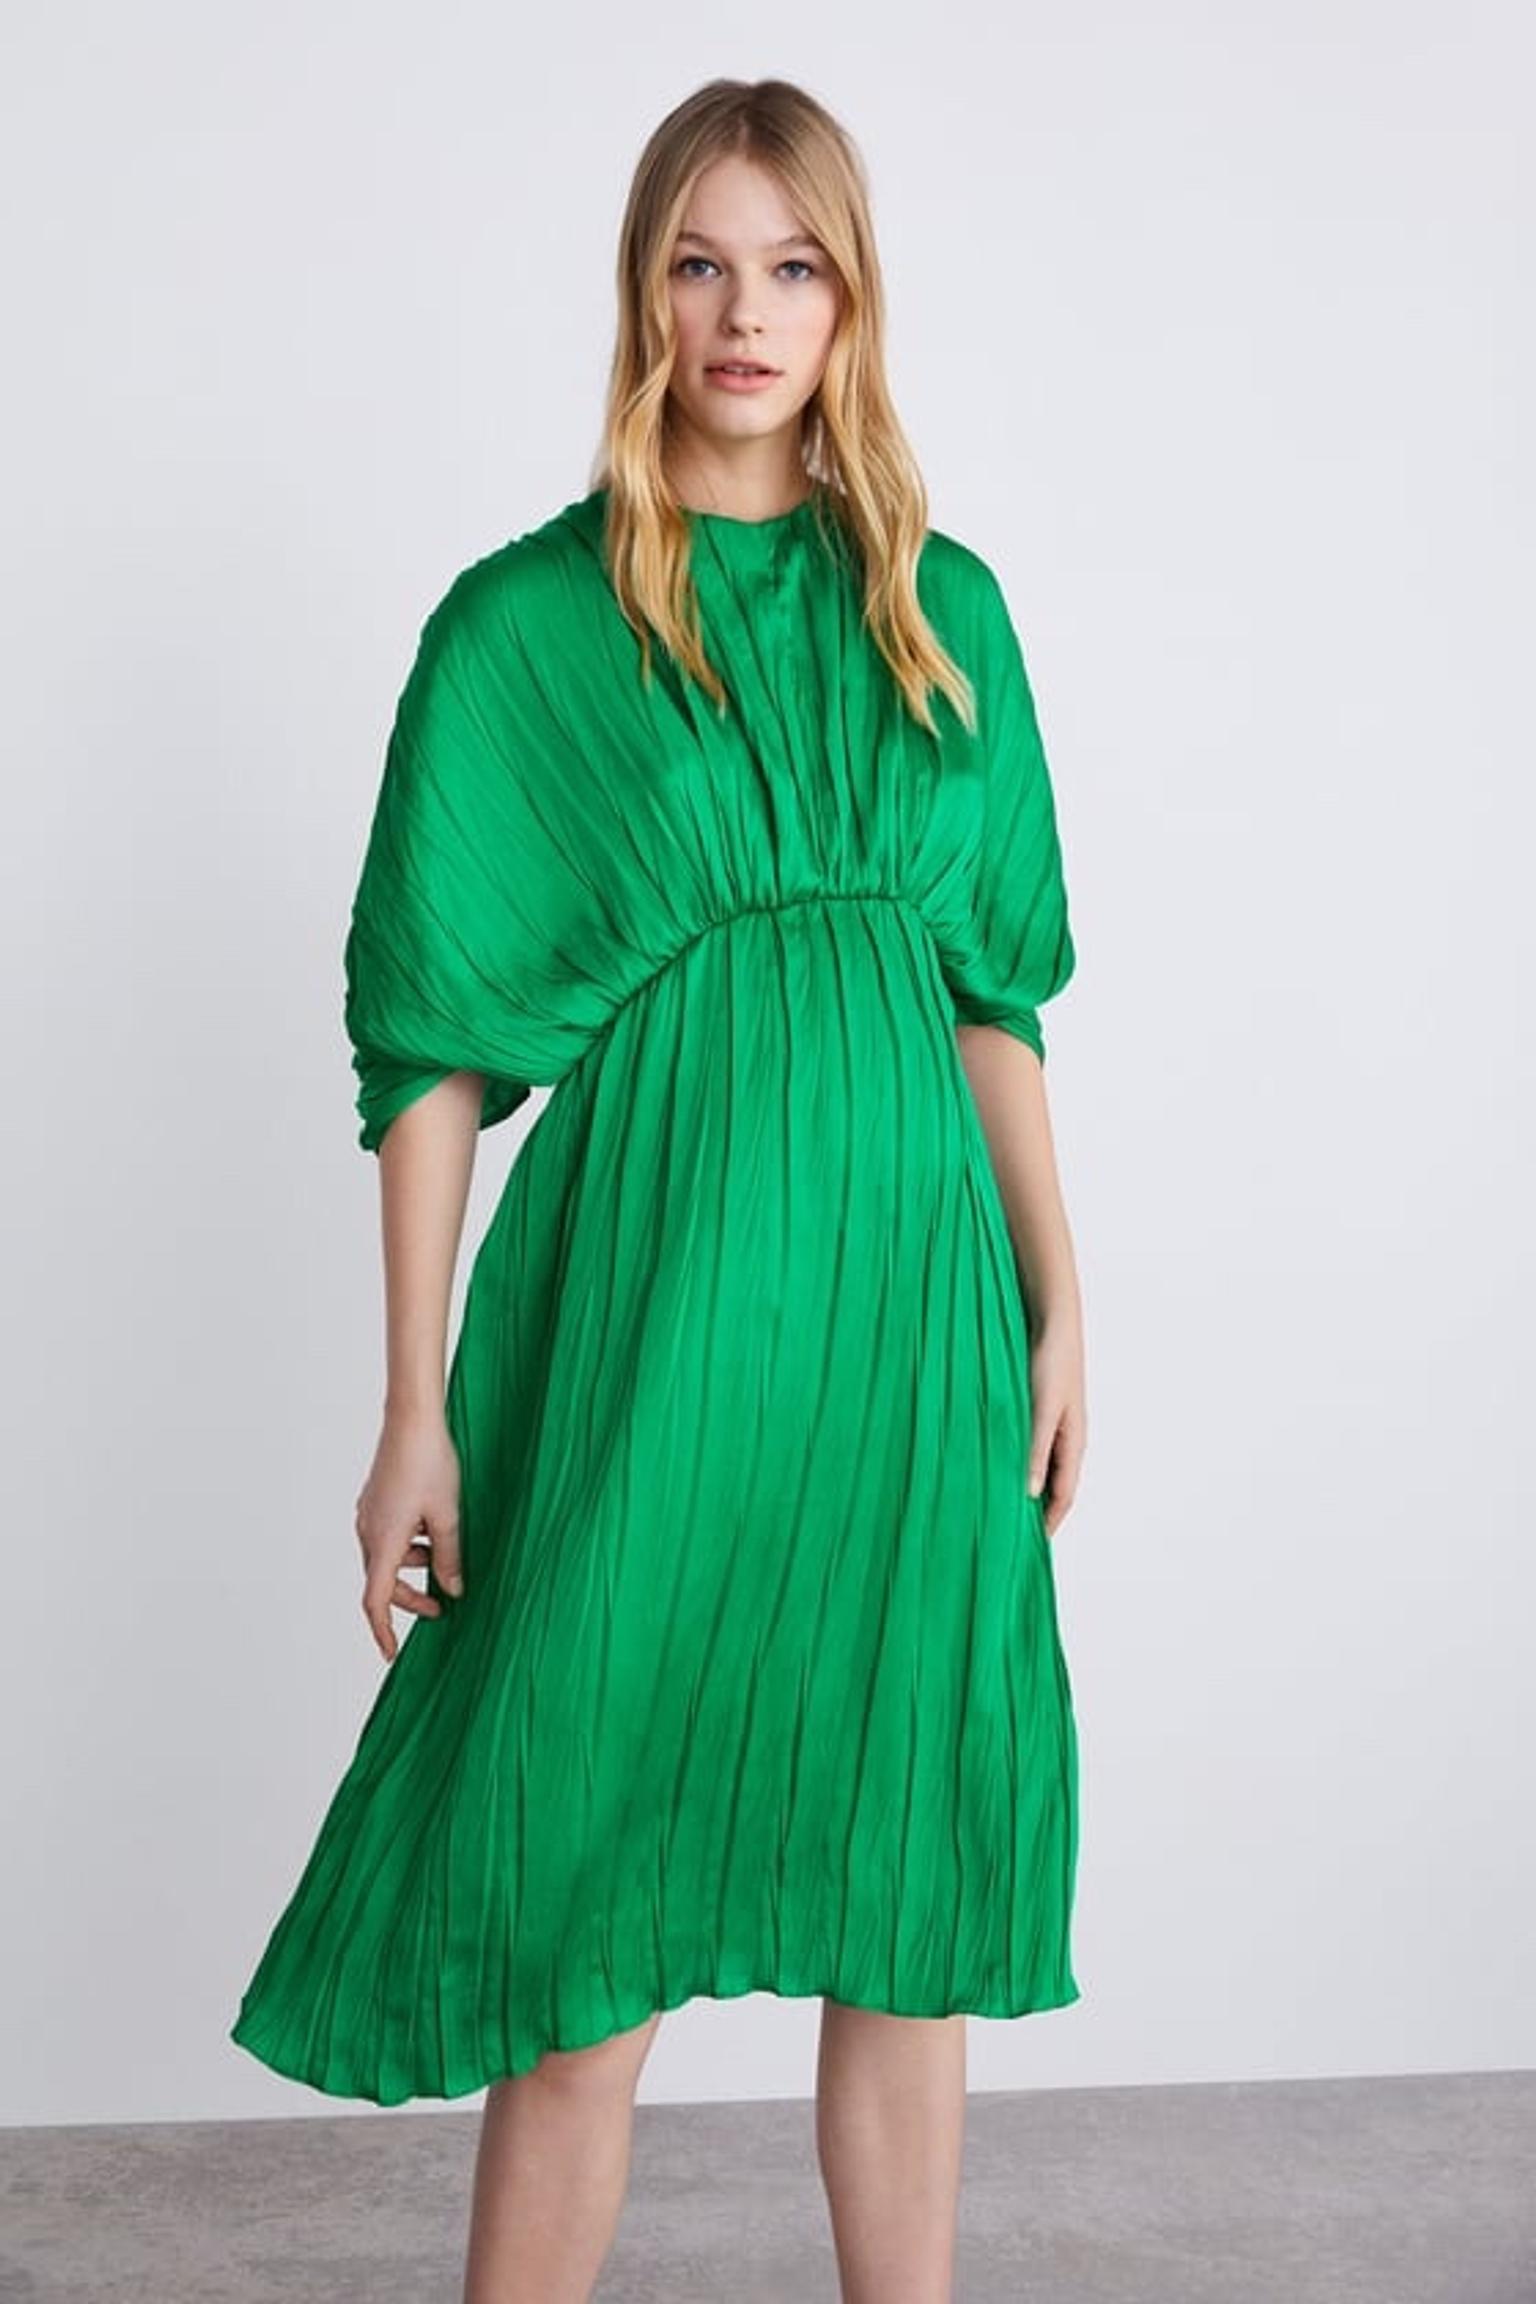 green dress zara 2019